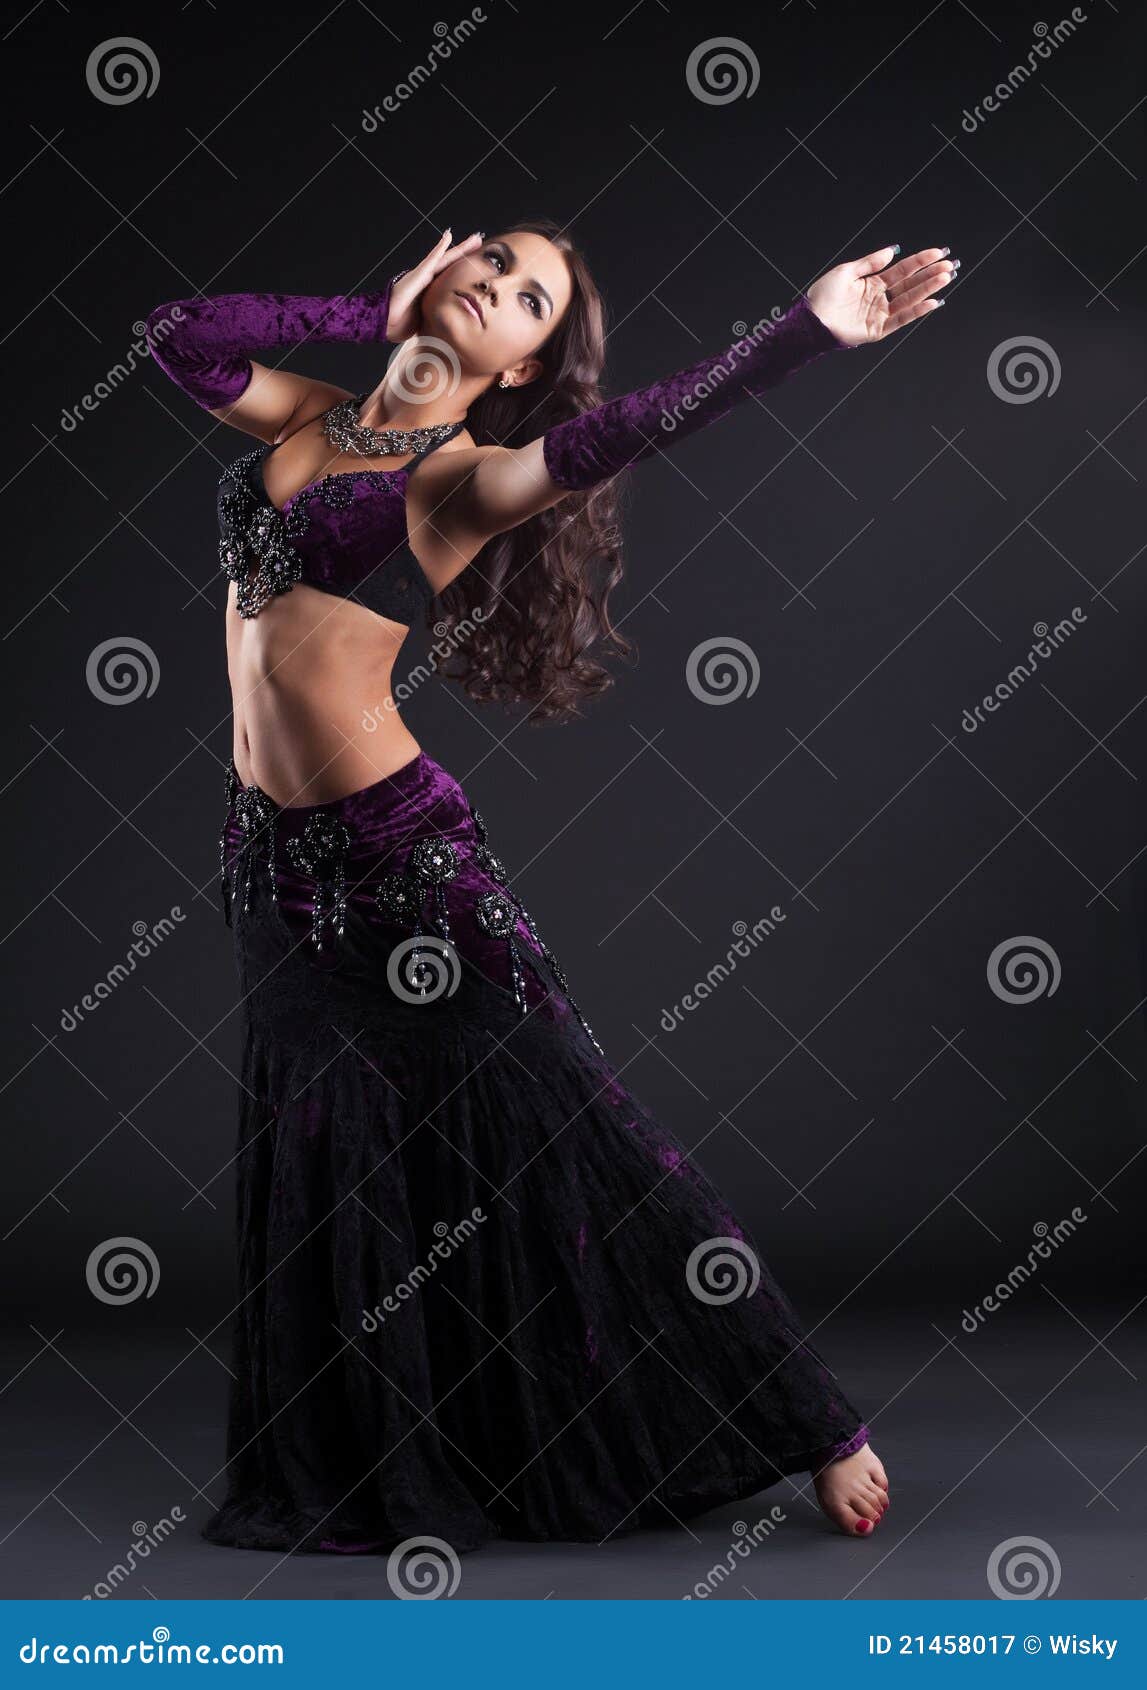 para castigar antiguo Serafín Danza Atractiva De La Mujer En Traje árabe Oriental Imagen de archivo -  Imagen de traje, adulto: 21458017